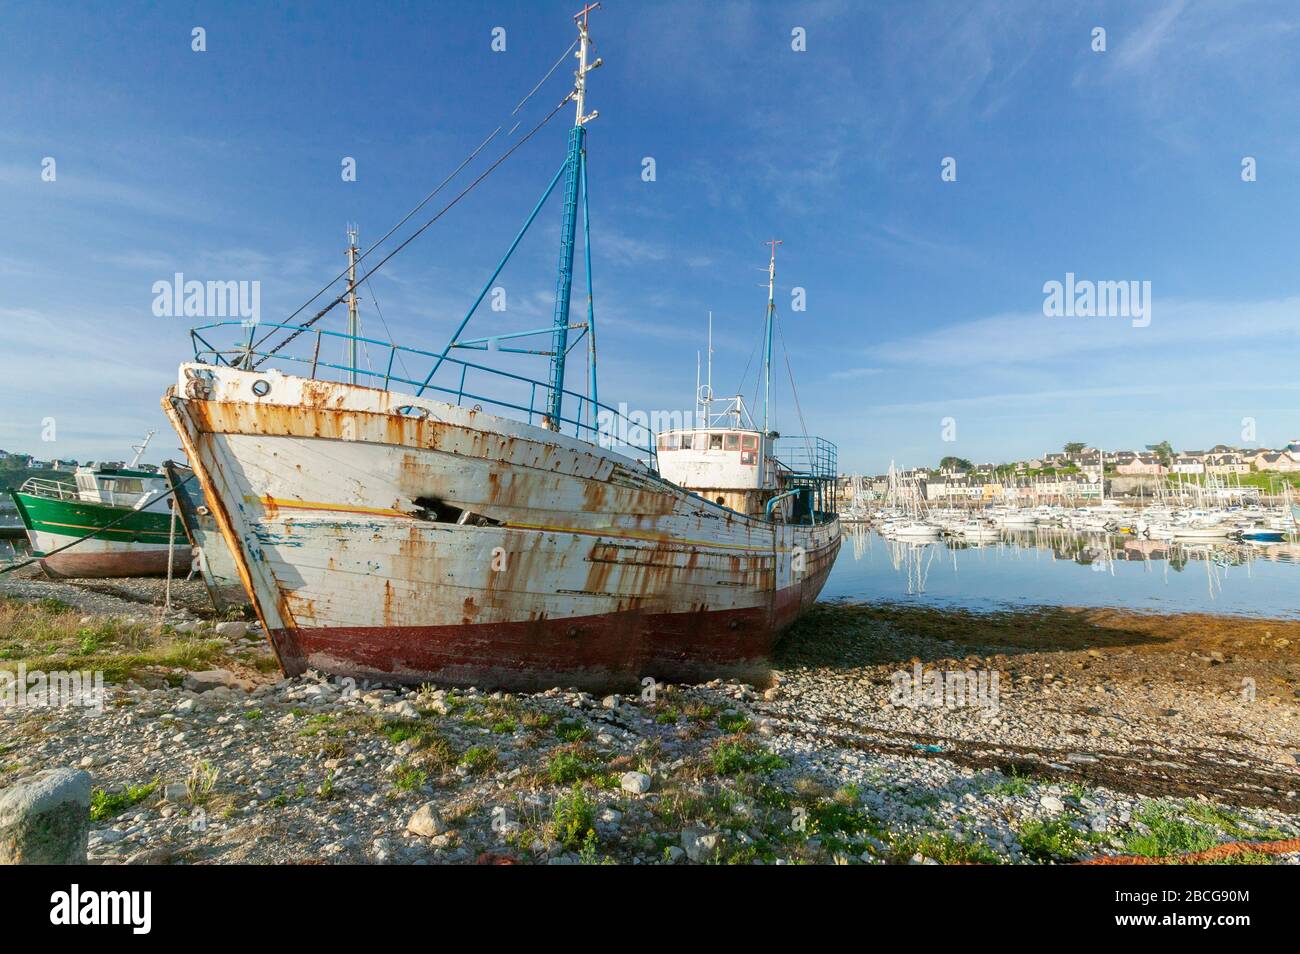 Bateaux de pêche pourris sur la plage du pittoresque village breton de Camaret sur mer, Britanny, France Banque D'Images